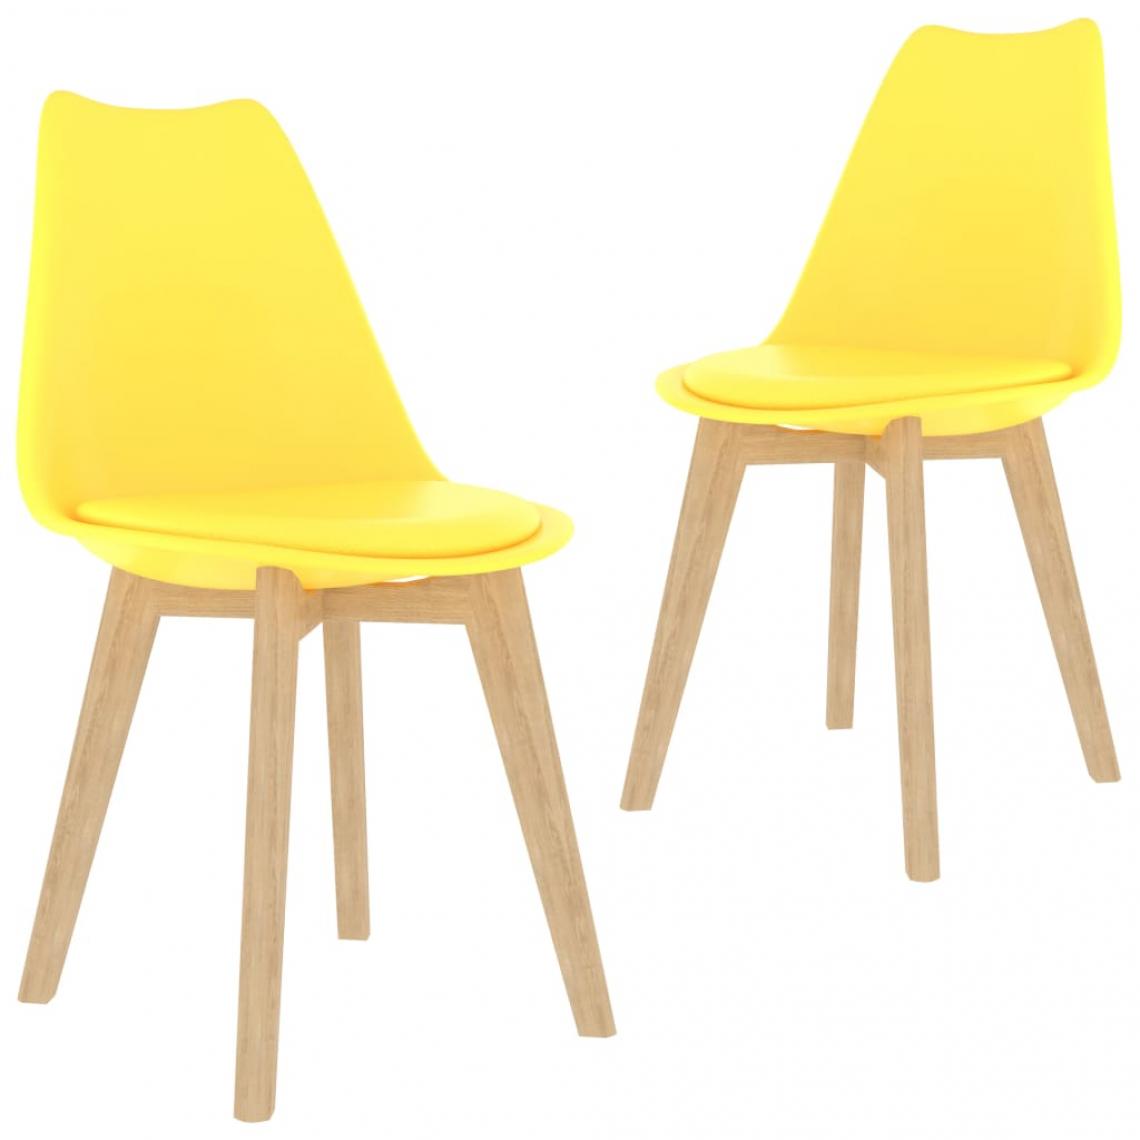 Decoshop26 - Lot de 2 chaises de salle à manger cuisine design moderne plastique jaune CDS020634 - Chaises